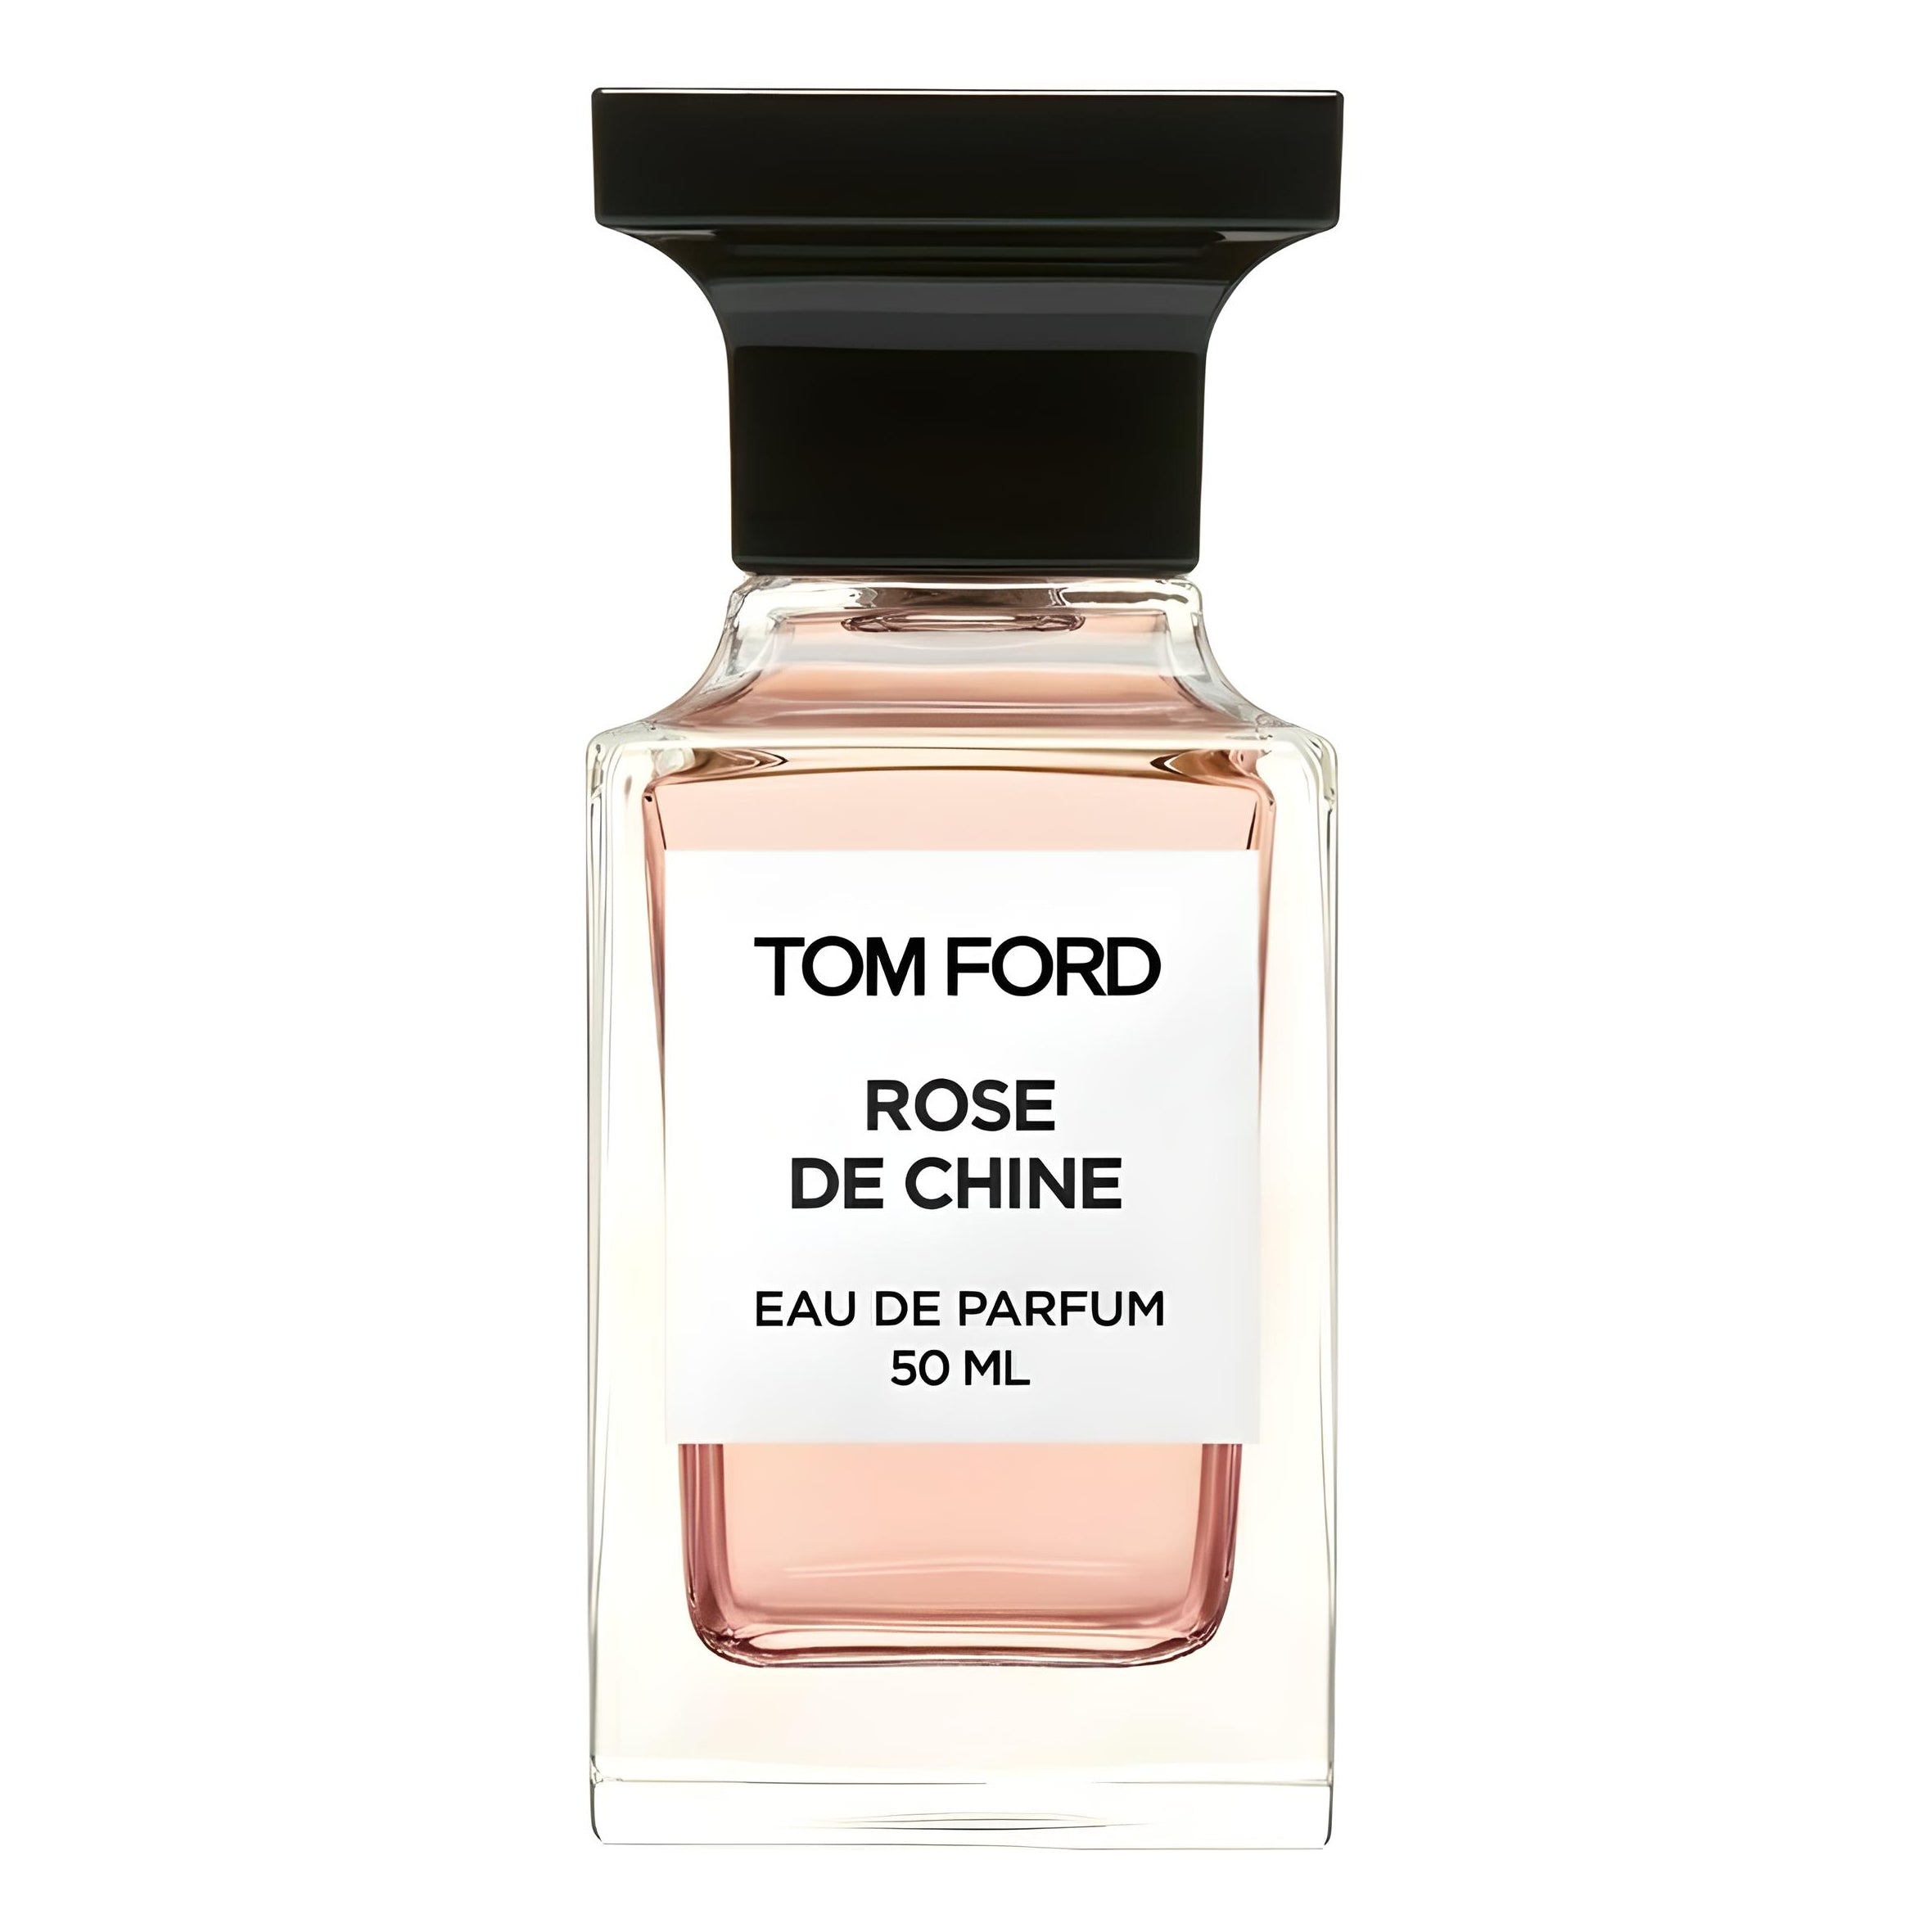 Tom Ford Rose de Chine Eau de Parfum Eau de Parfum TOM FORD   